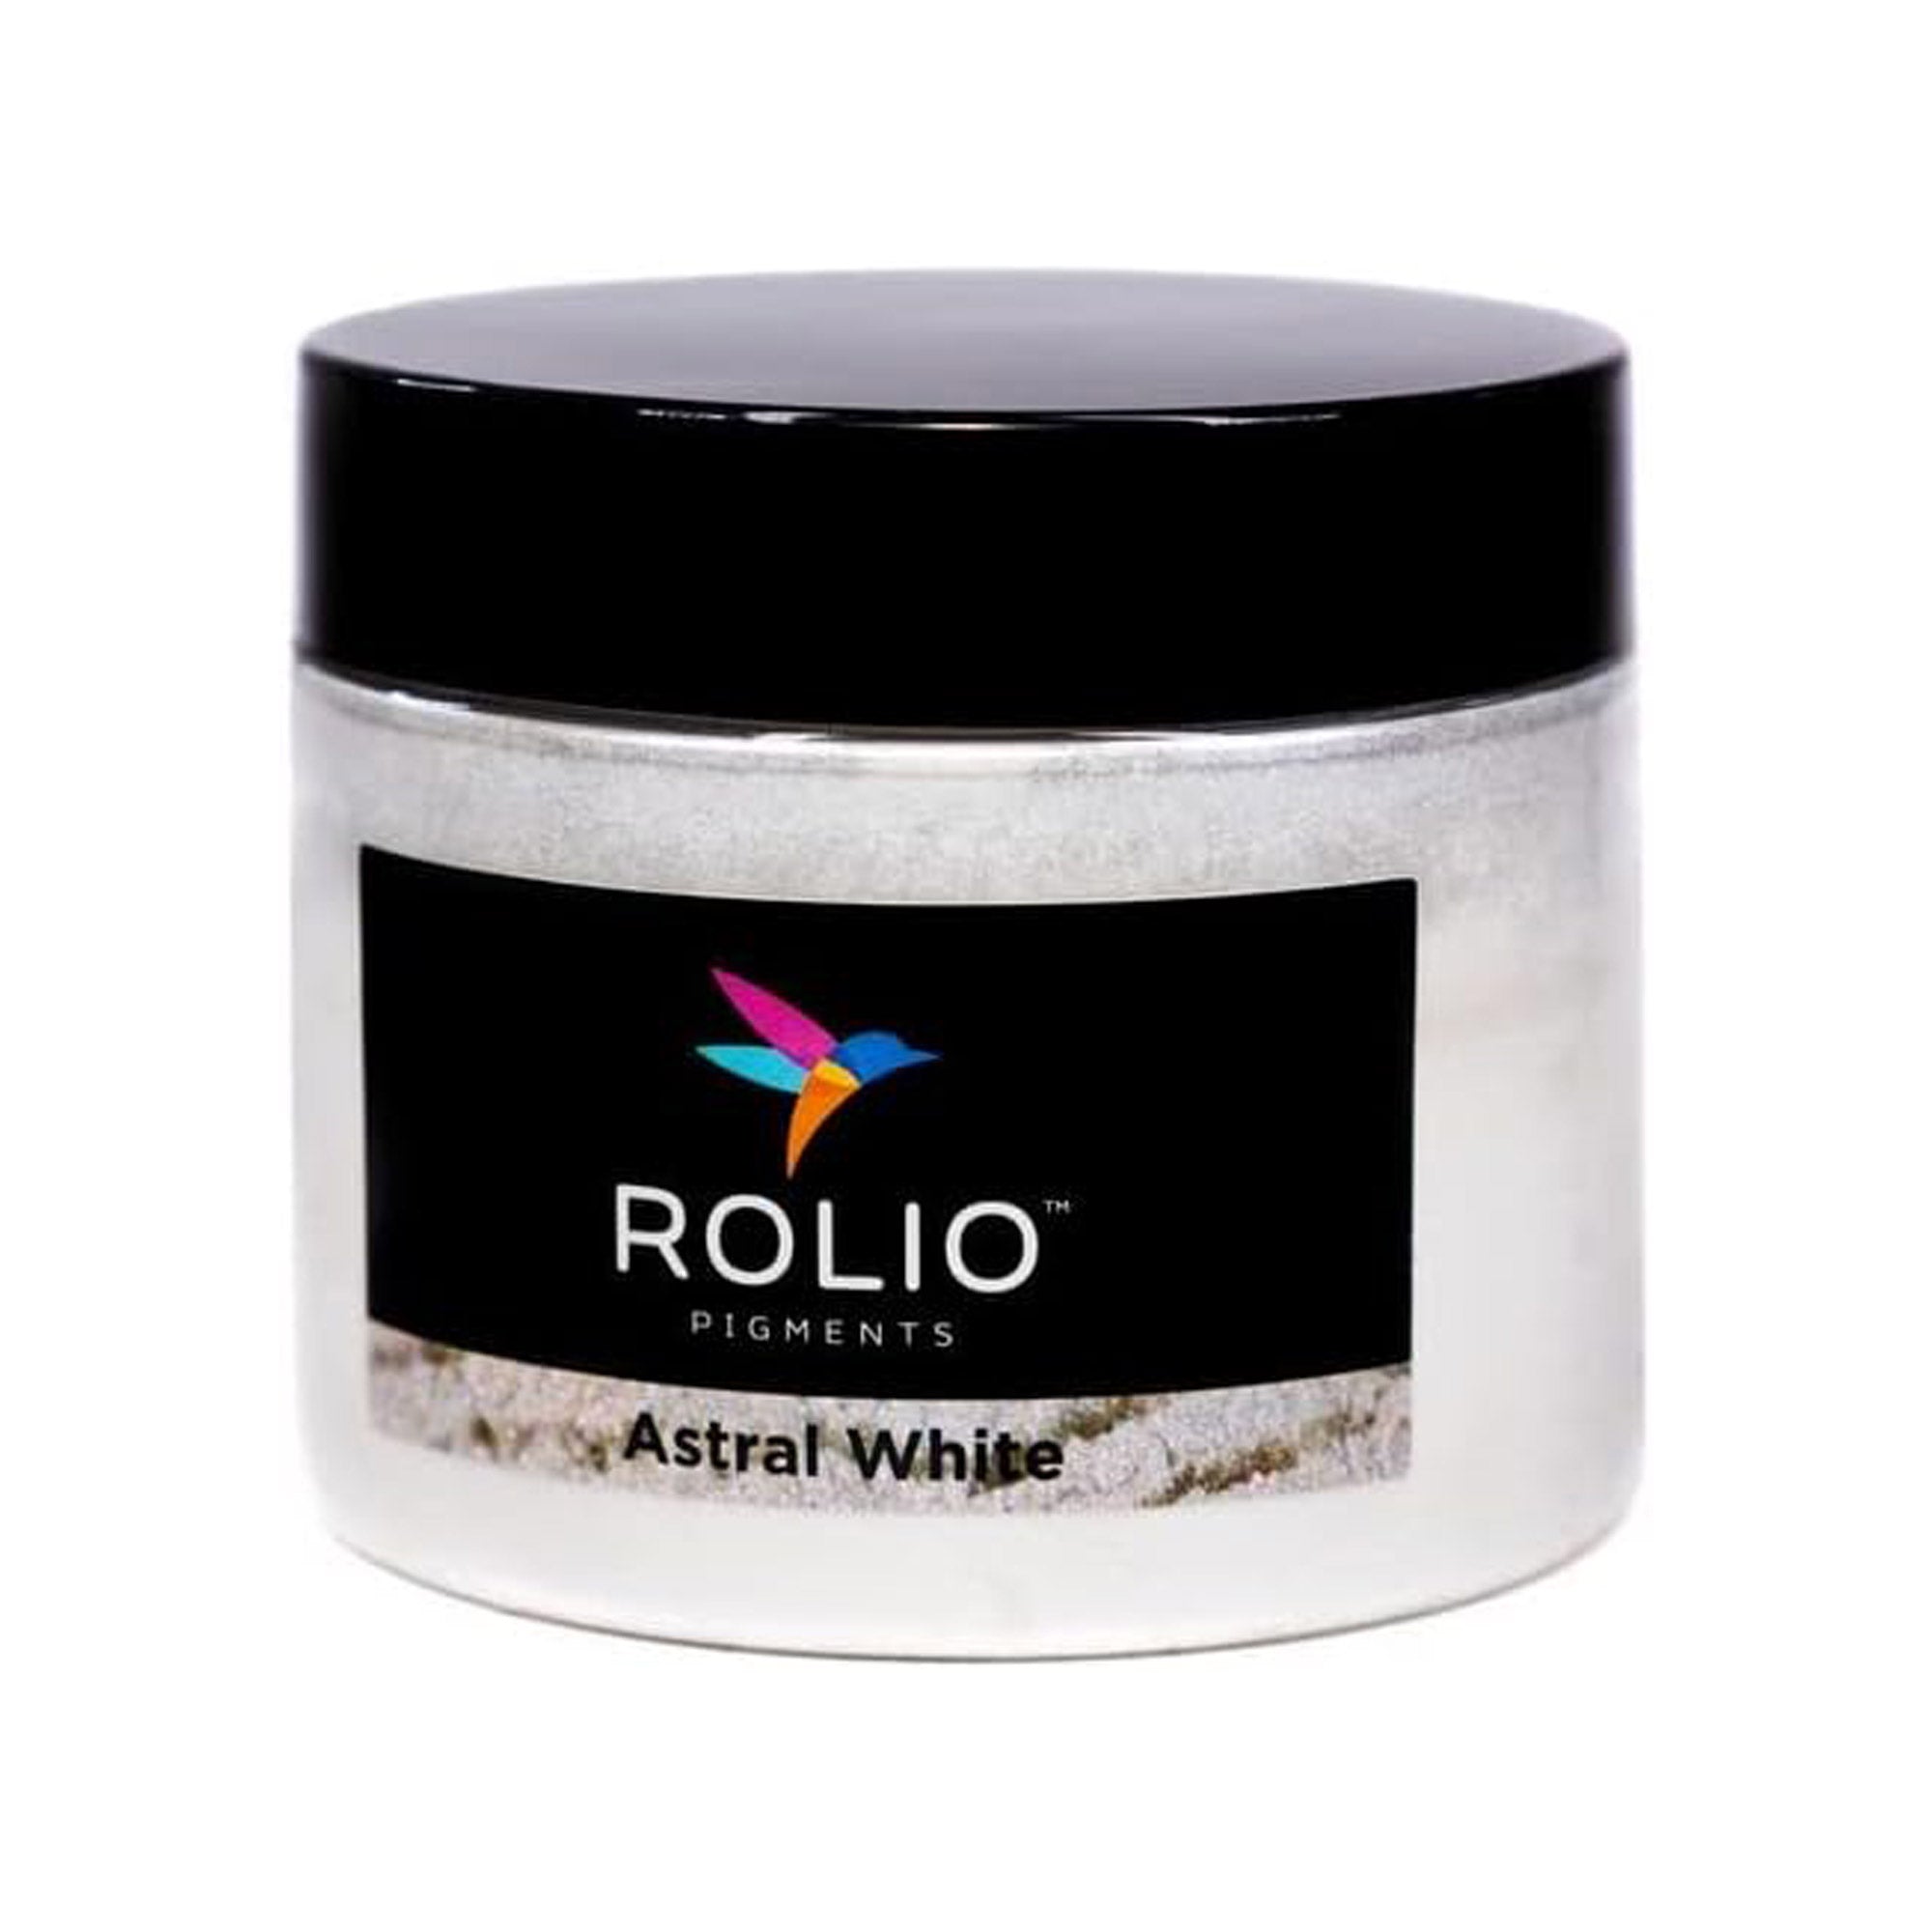 Astral-White-50g-Rolio-Mica-Powder_496679c1-77ba-4eae-850a-343309eceaf3.jpg